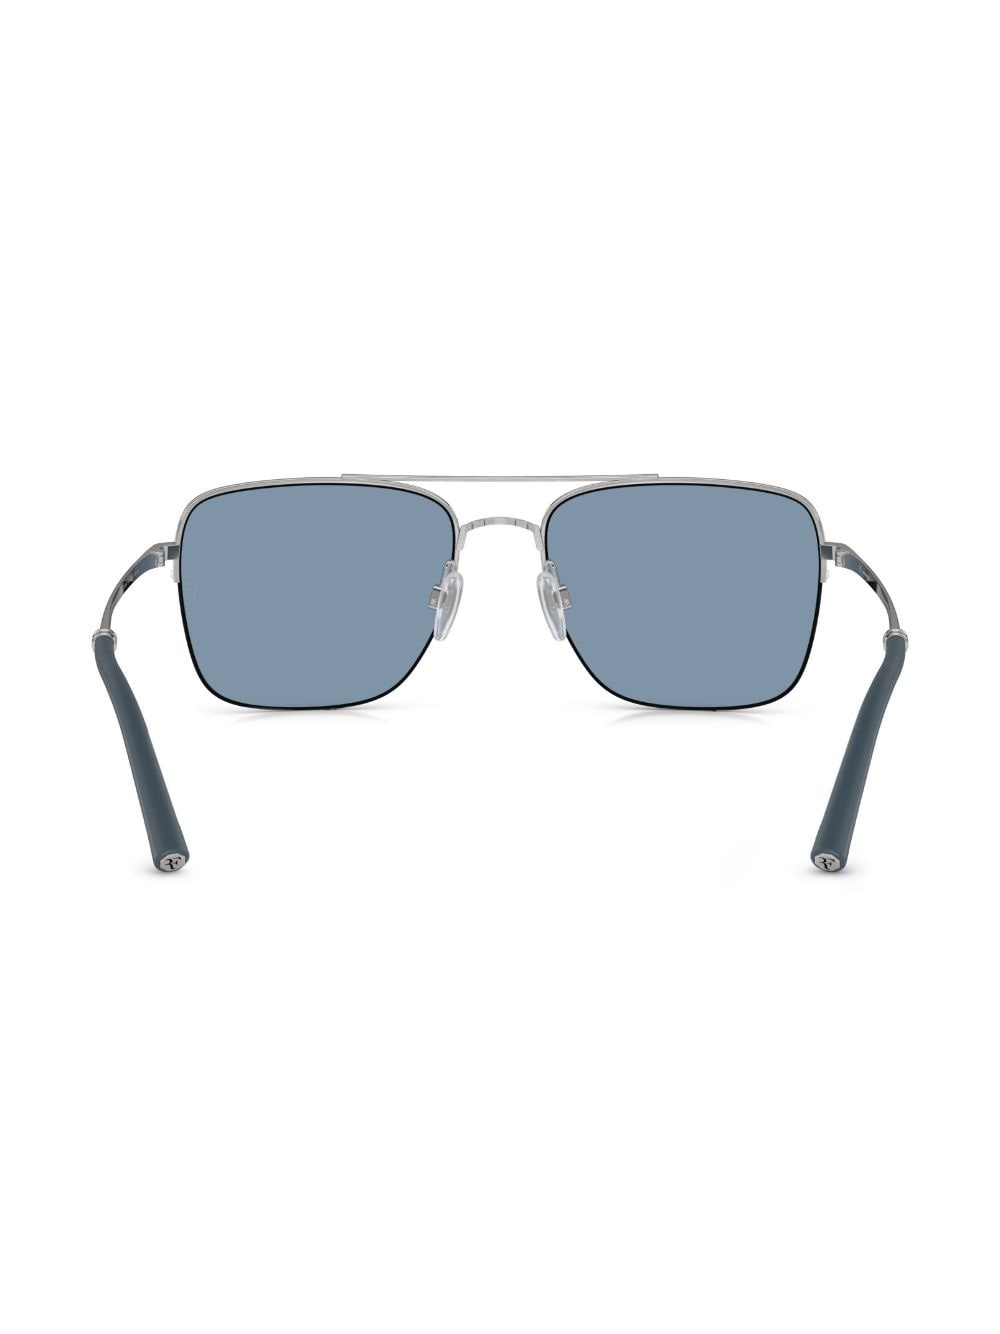 R-2 square-frame sunglasses - 4